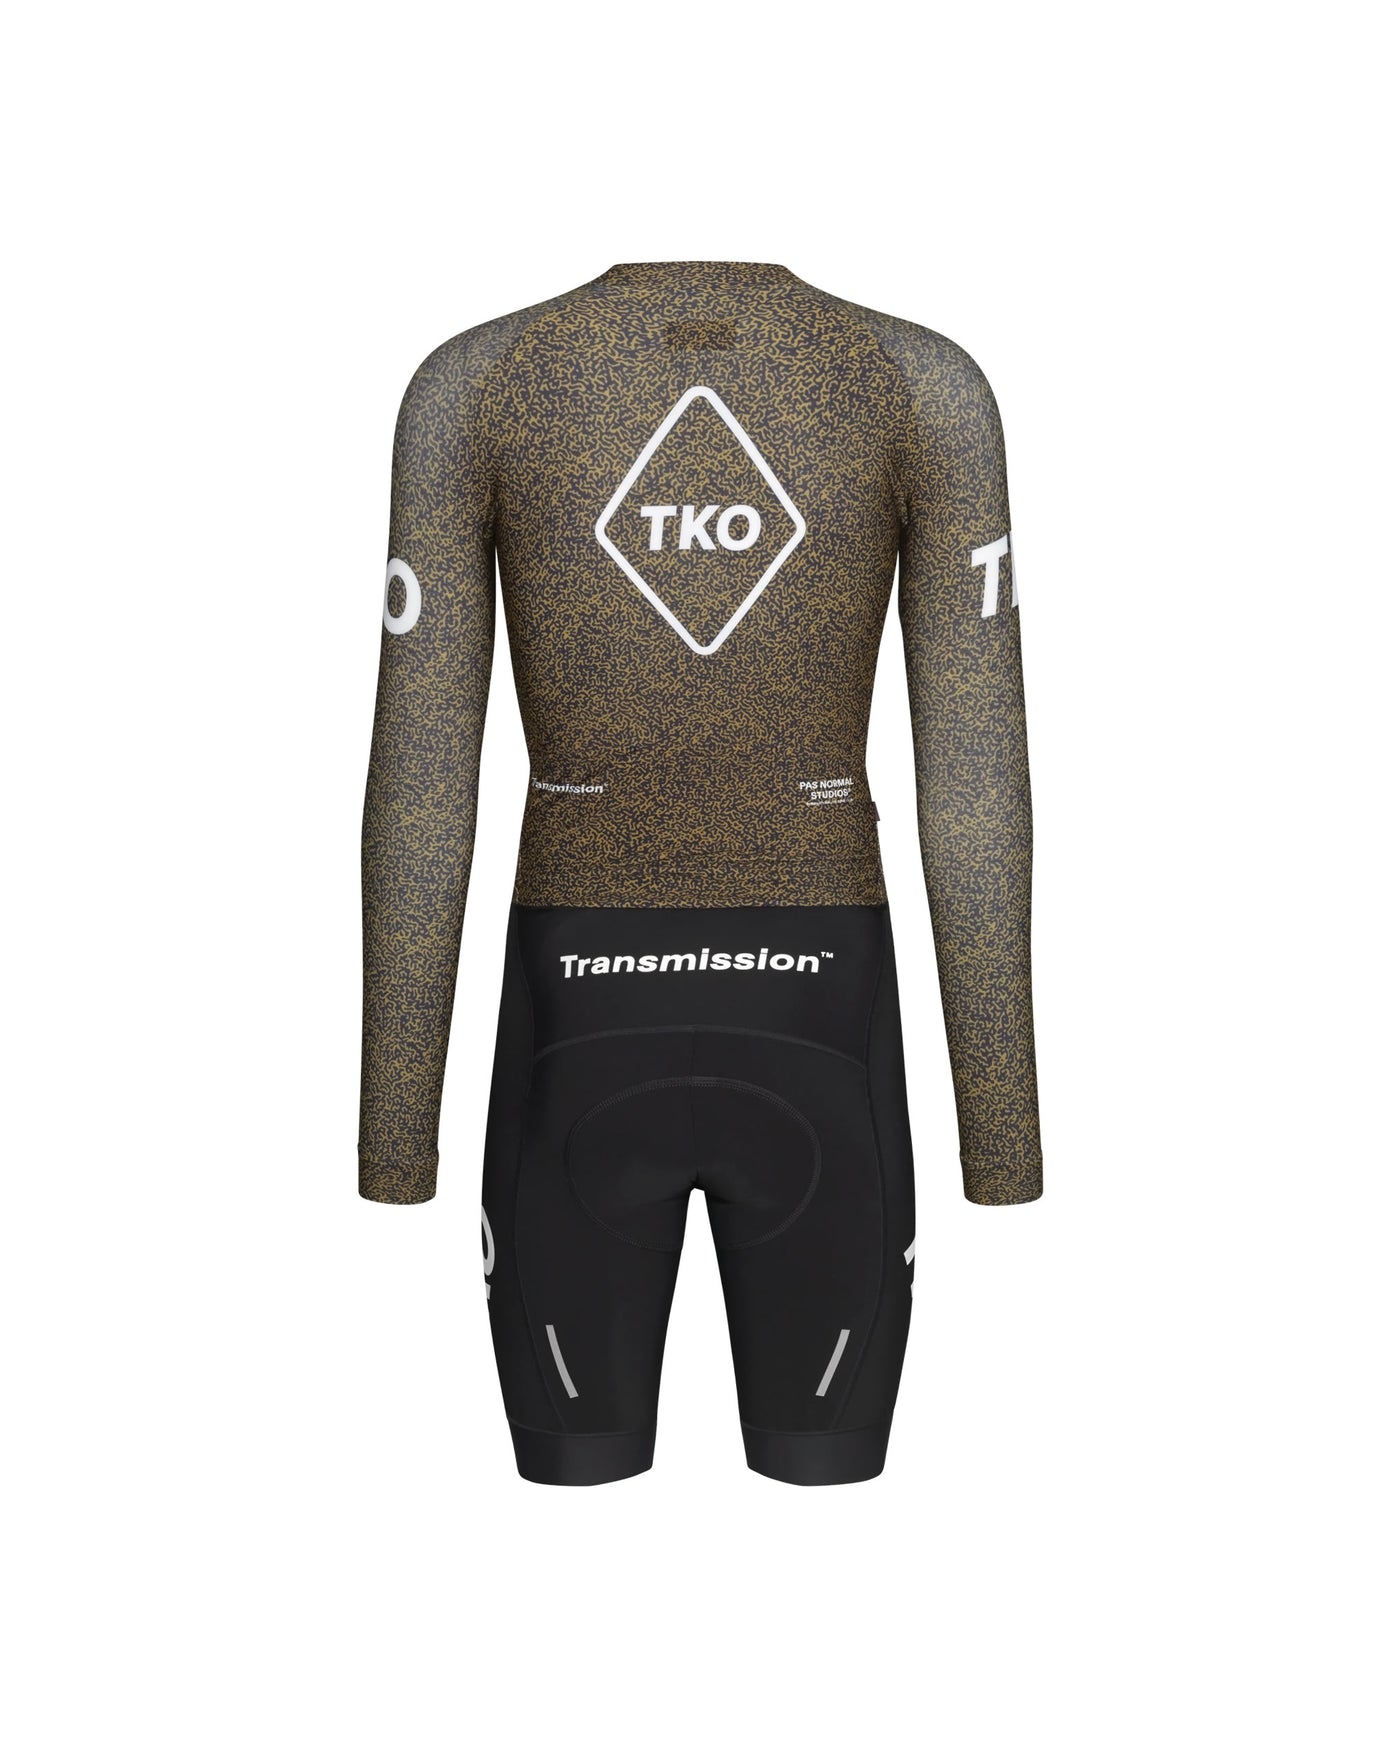 Men's T.K.O. Thermal Speedsuit